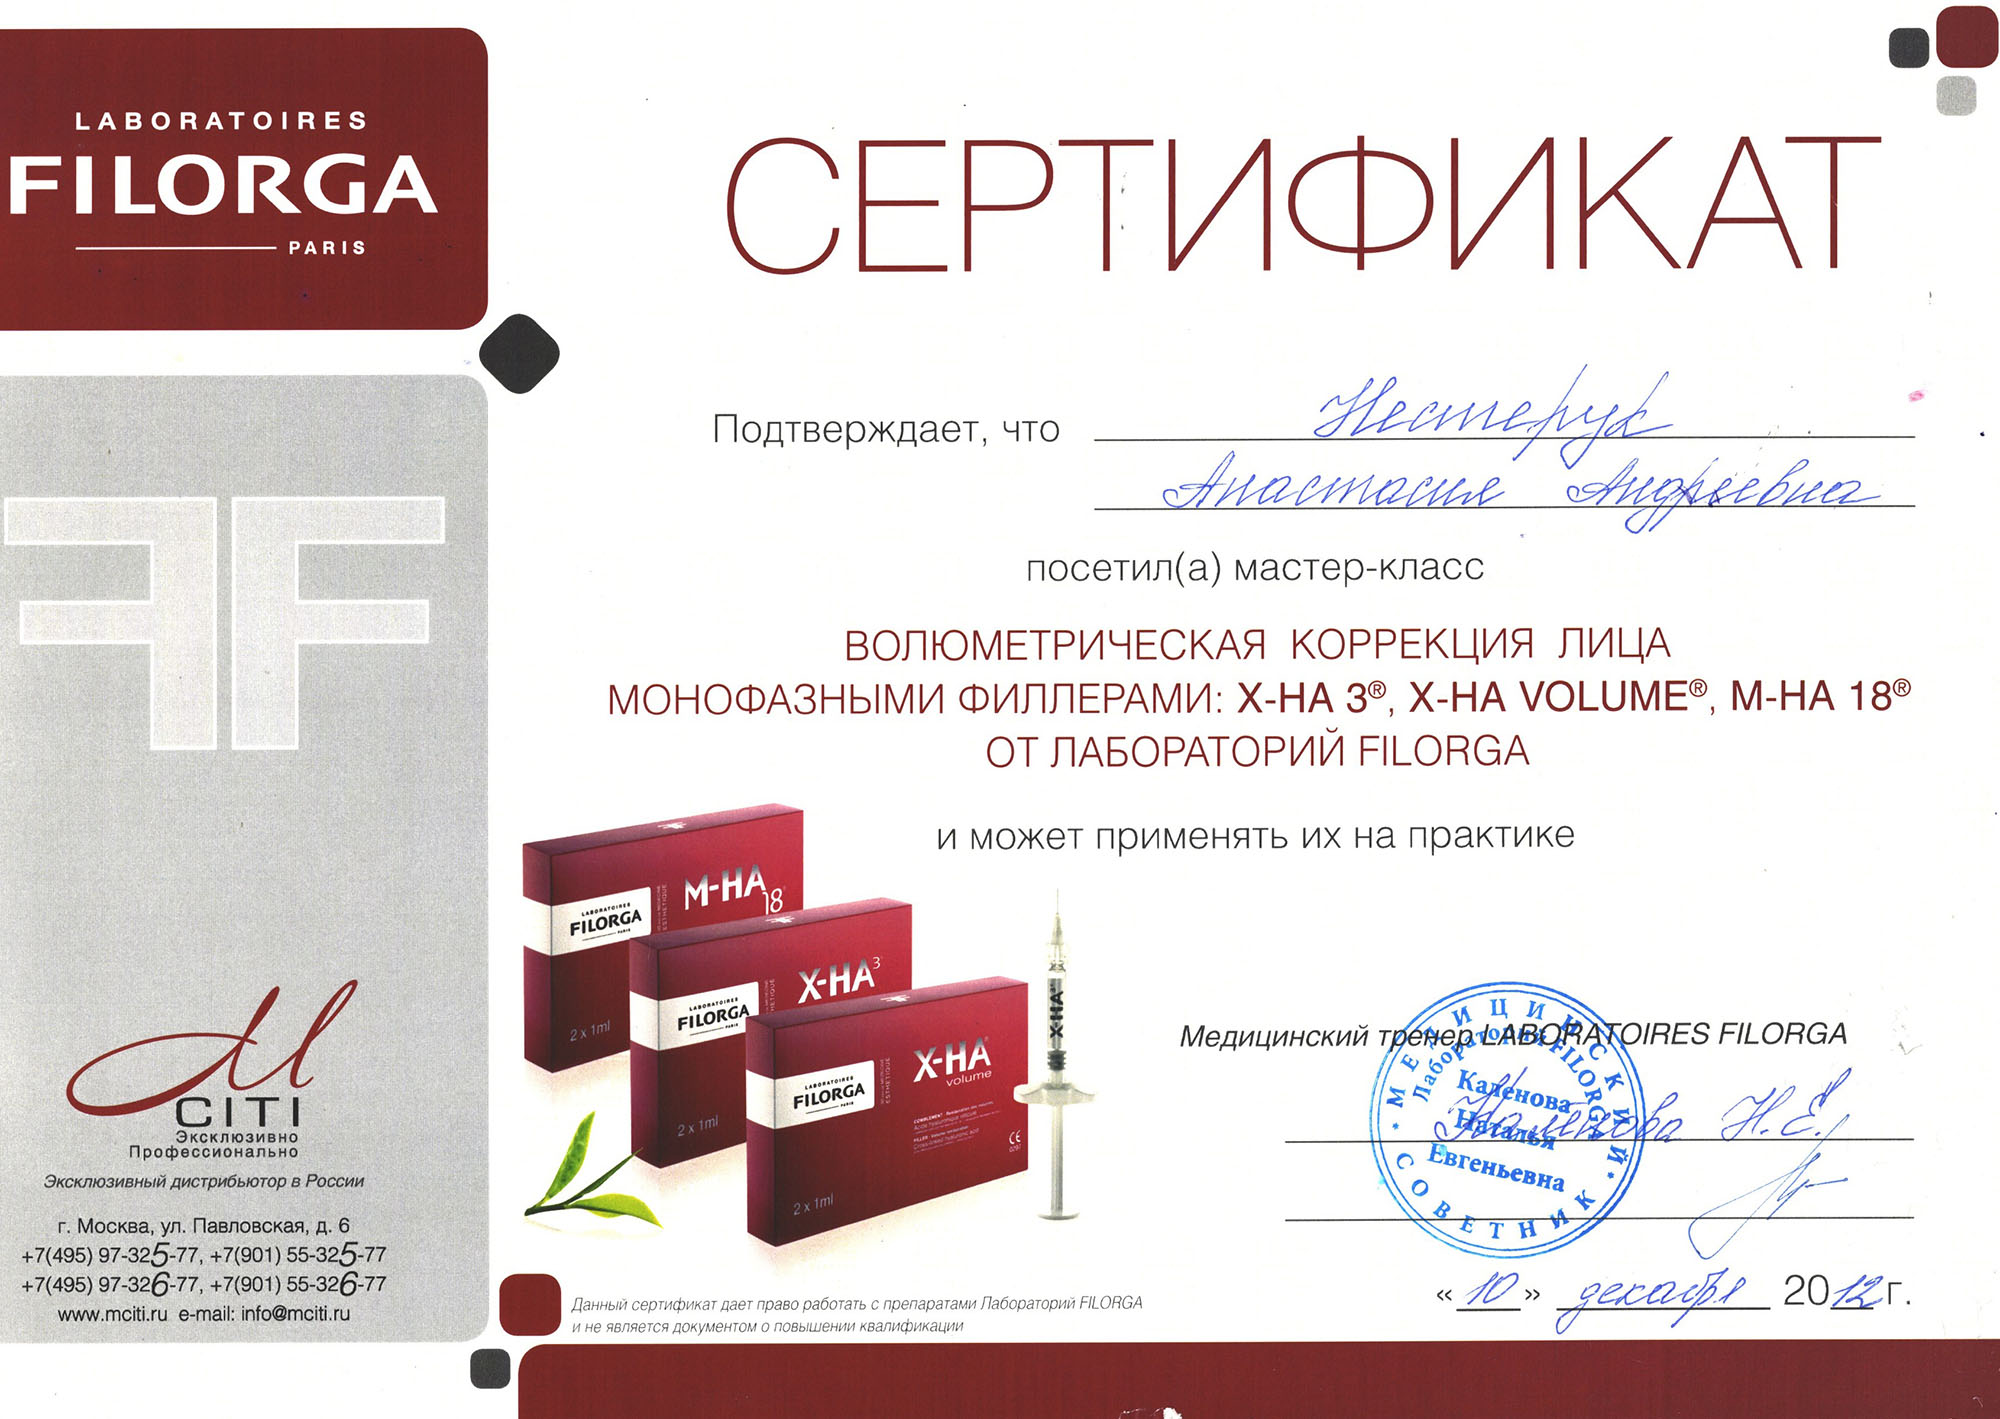 Сертификат — Мастер-класс «Волюметрическая коррекция лица». Яблочко Анастасия Андреевна